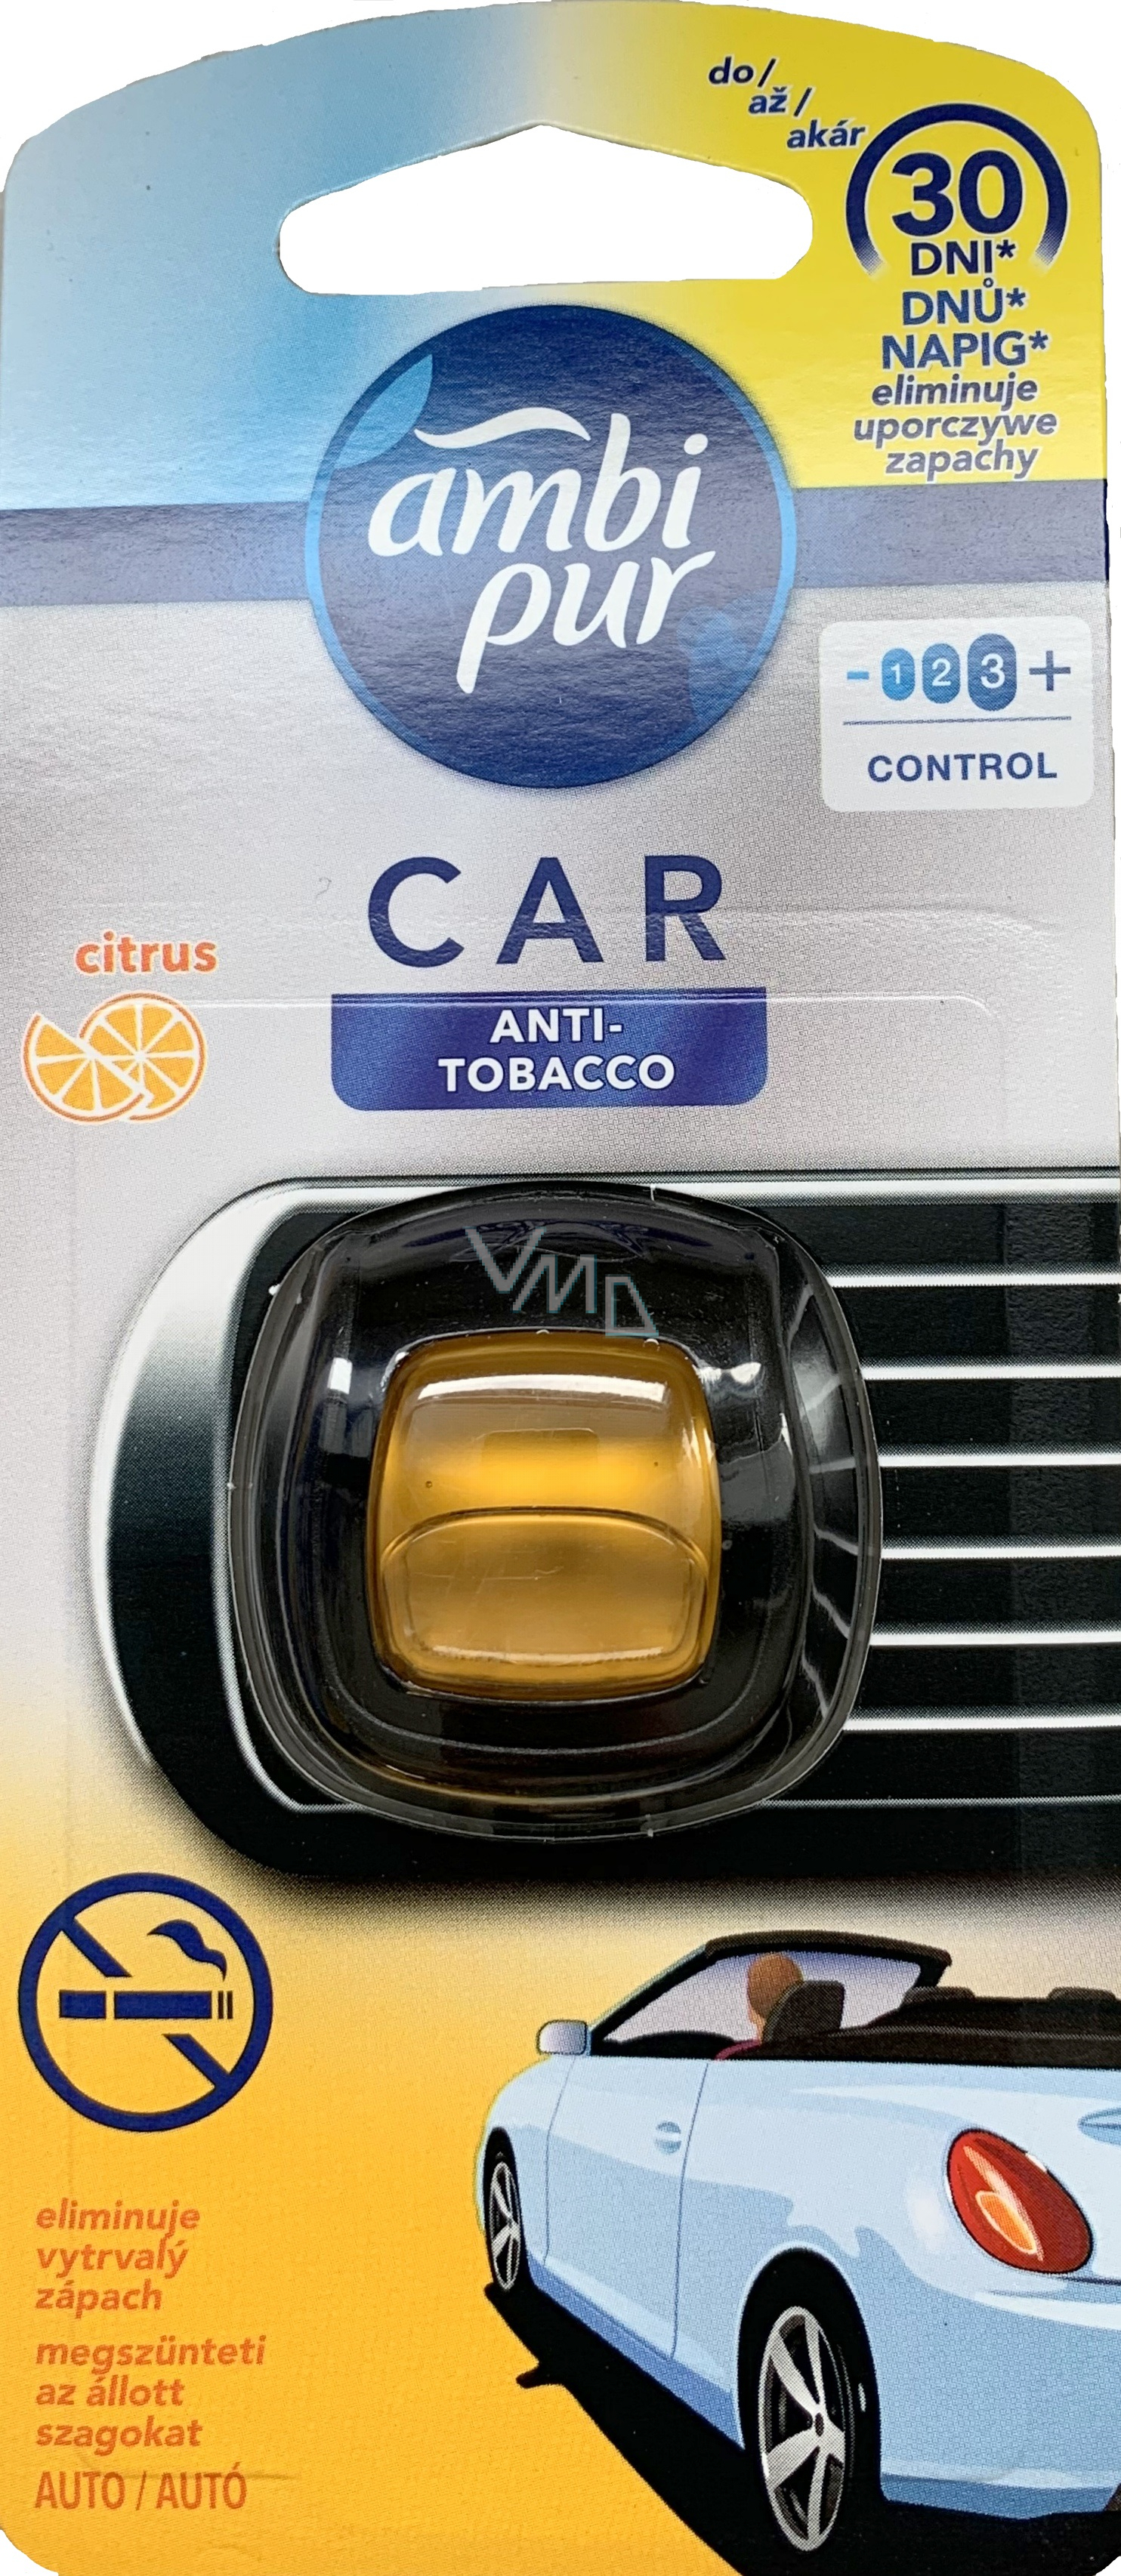 Ambi Pur Car Citrus Anti-Tobacco car air freshener 2 ml - VMD parfumerie -  drogerie